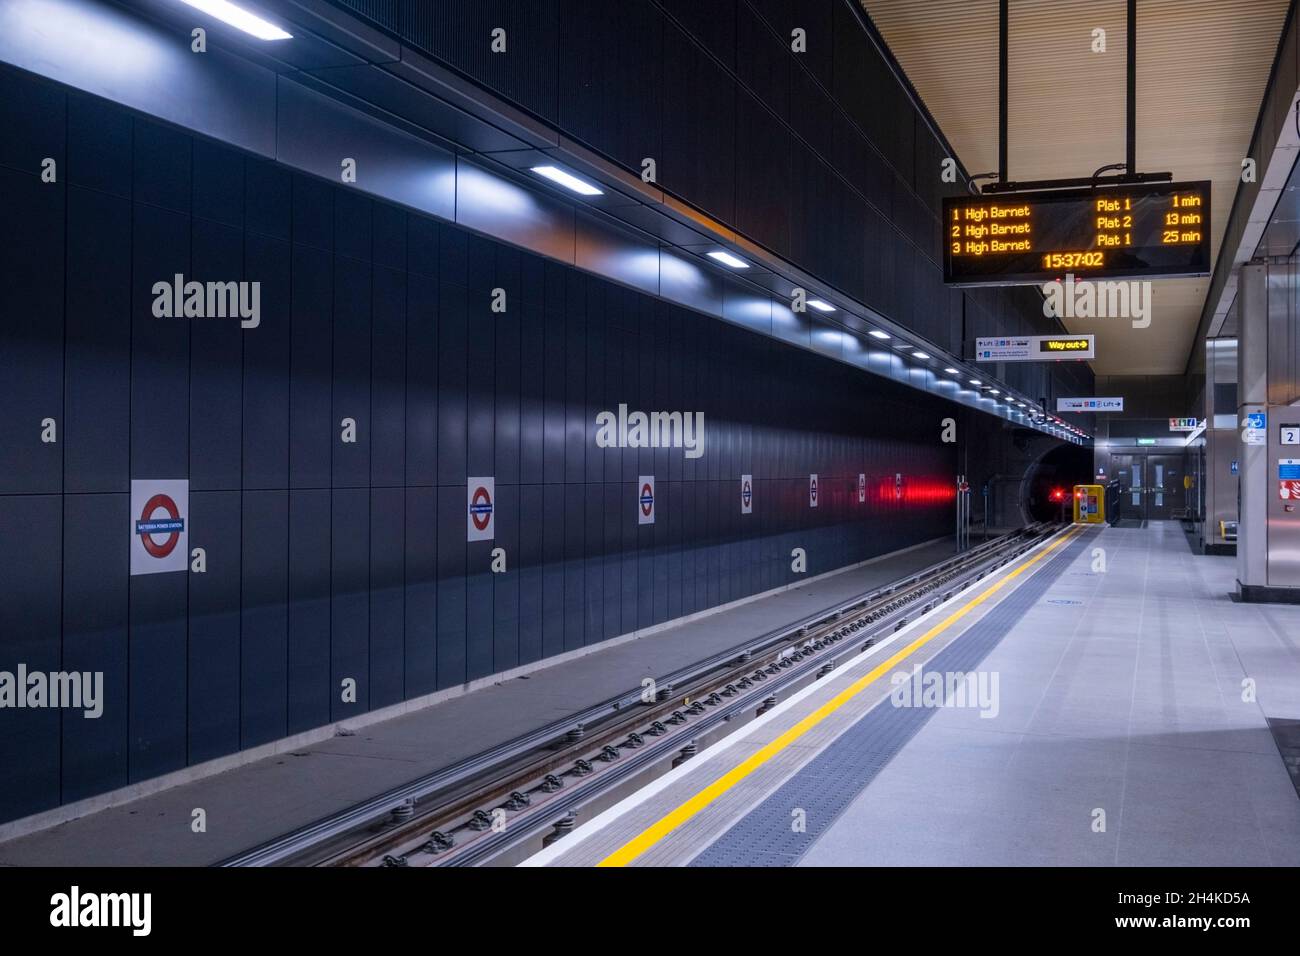 Centrale elettrica di Battersea; stazione della metropolitana, senza persone, Northern Line, piattaforma interna, Indicazioni per la stazione della metropolitana; metropolitana / metropolitana, Londra, Regno Unito Foto Stock